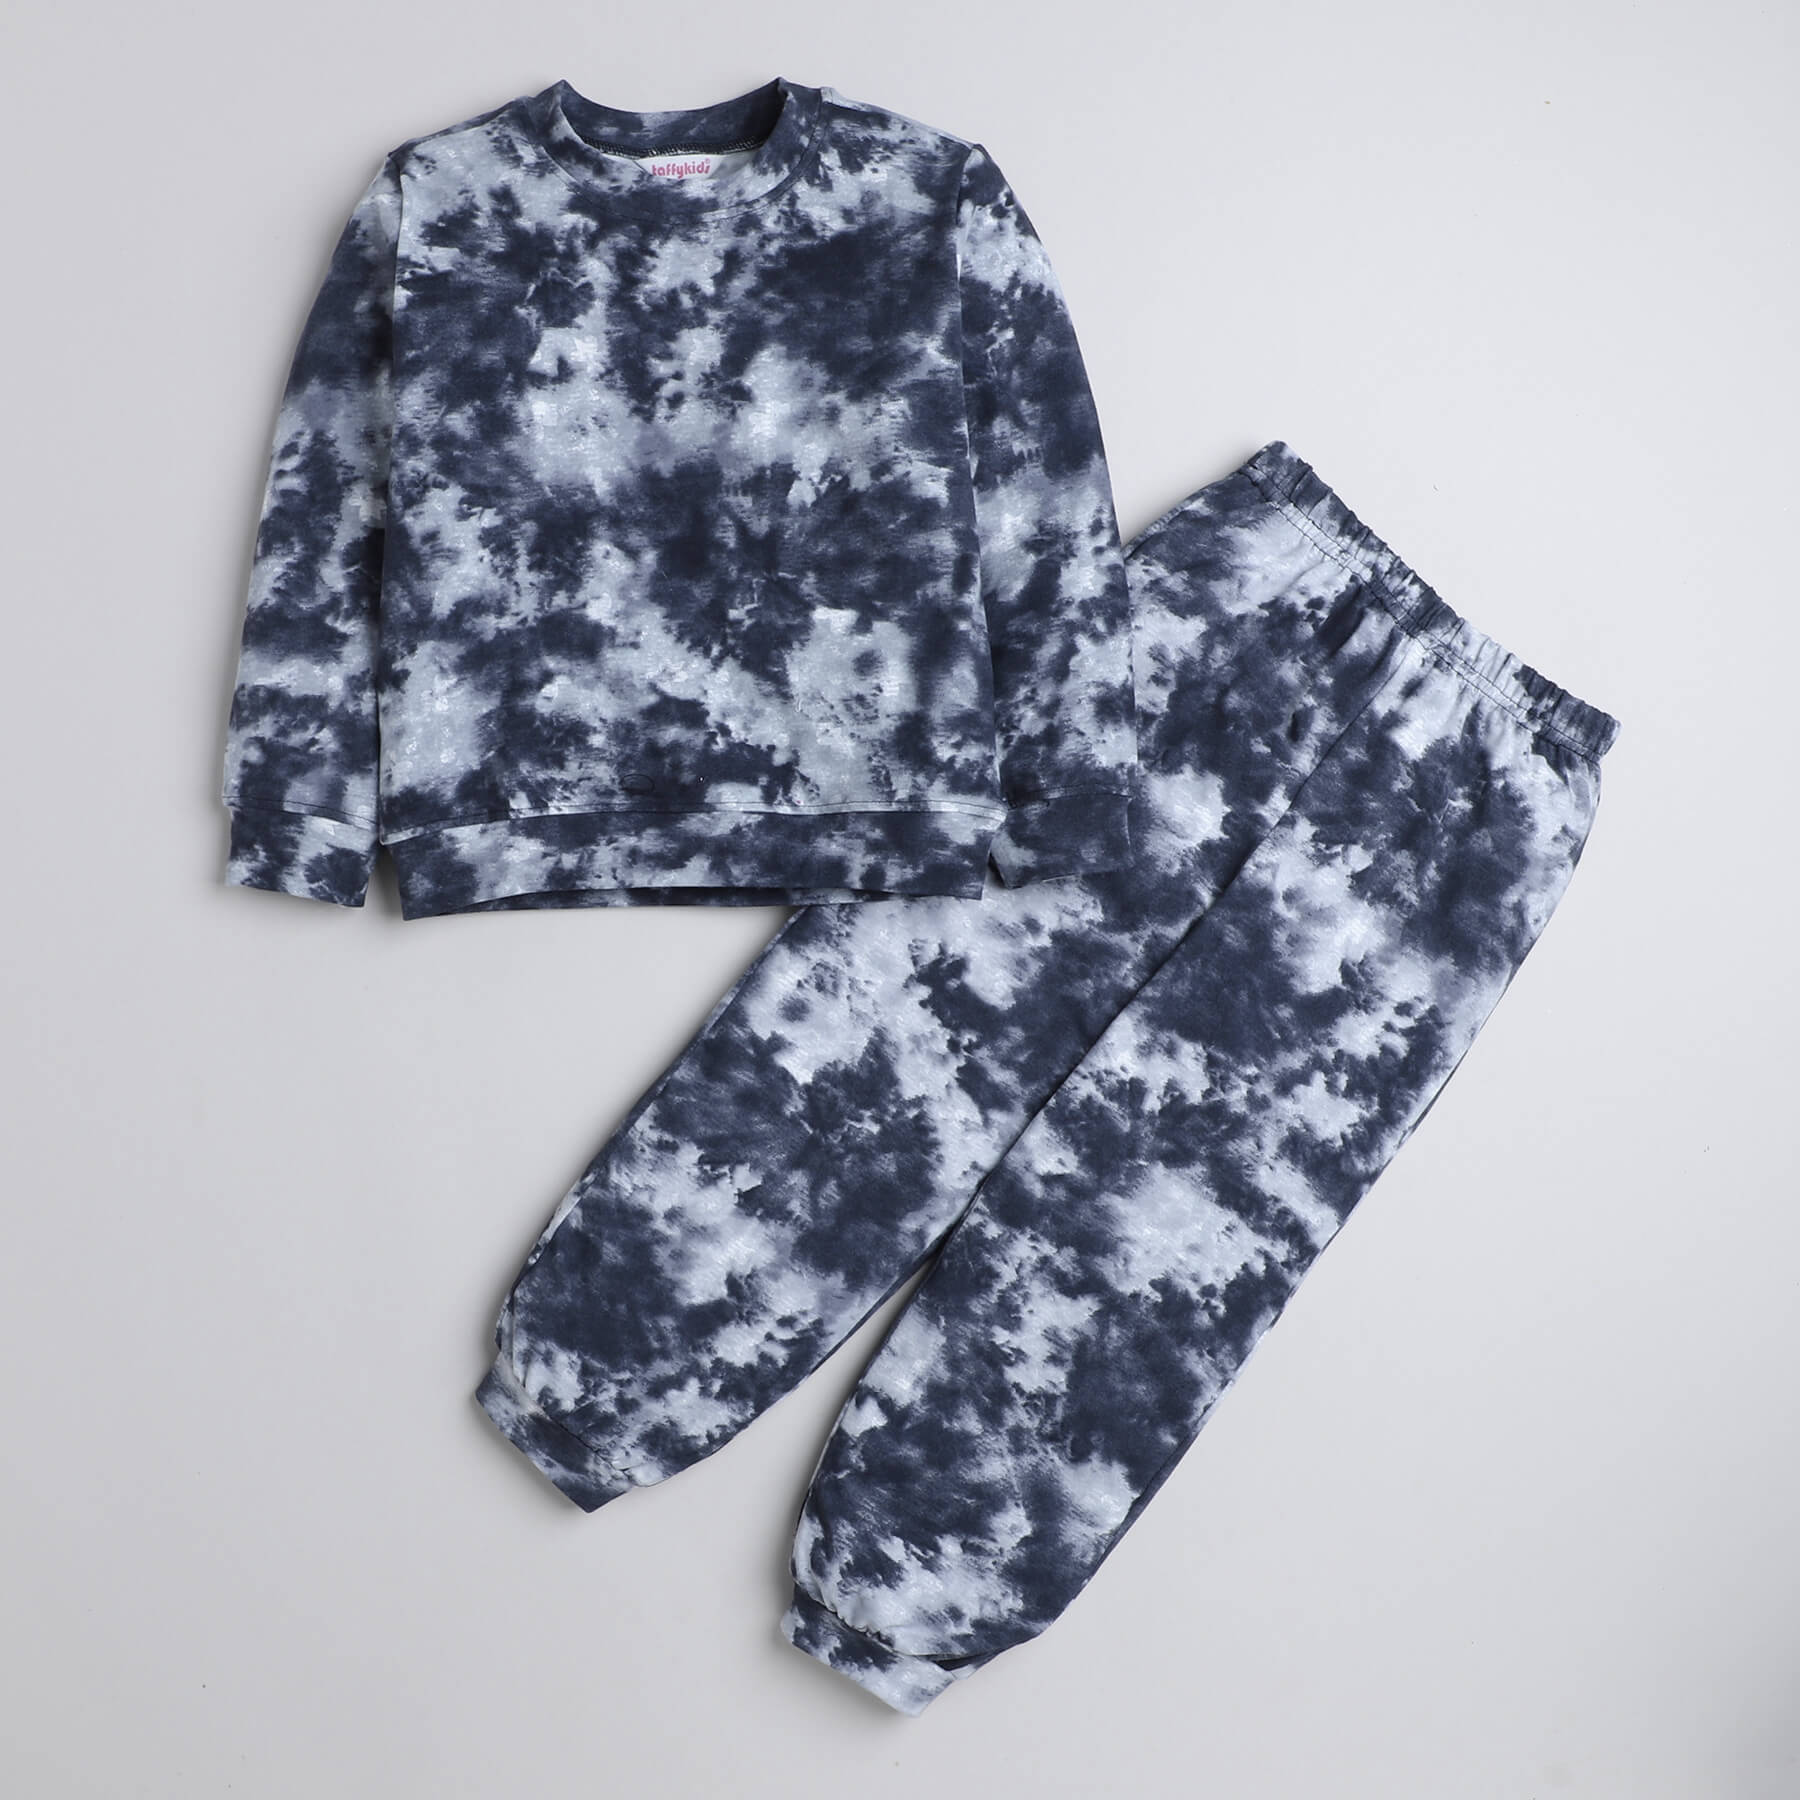 Taffykids tie-dye printed full sleeves sweatshirt and jogger pant set-Bluish grey